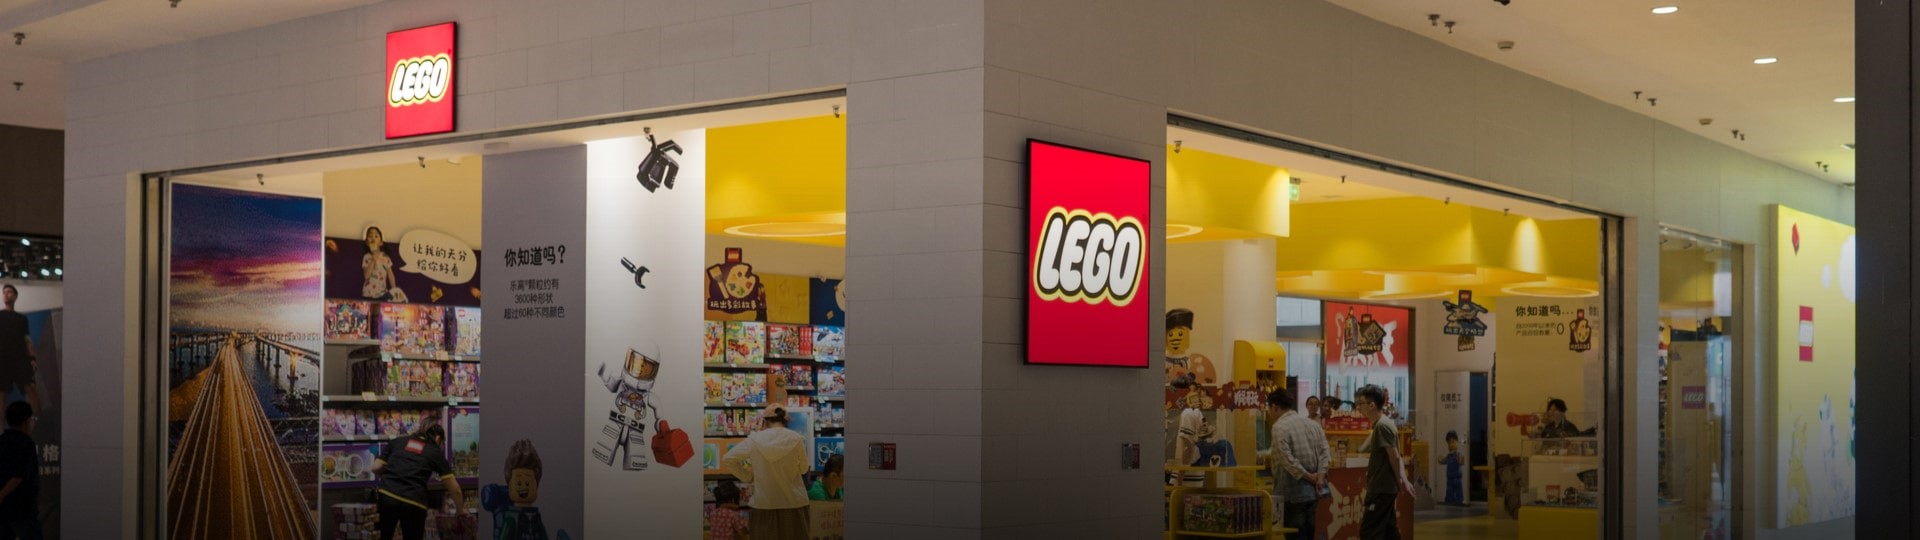 Výrobce hraček Lego loni zvýšil zisk, poptávku podpořila pandemie